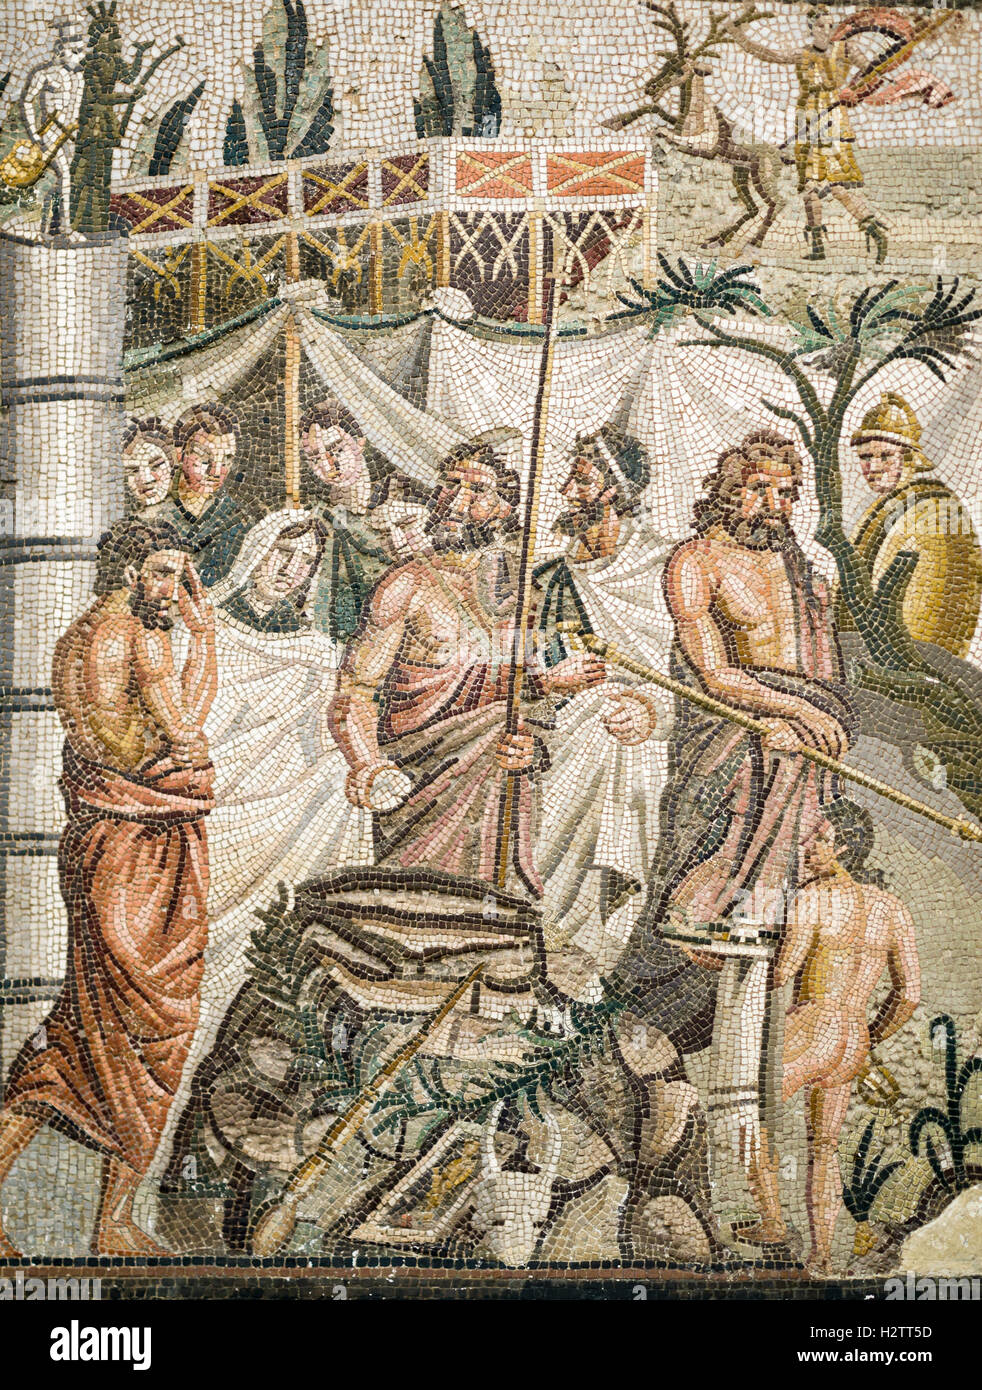 Am alten Roman Mosaic der Bestattung einer Urne. Ein detailliertes Bild der römischen Lebens und Beerdigung Praktiken in eine bunte Keramik dargestellt Stockfoto